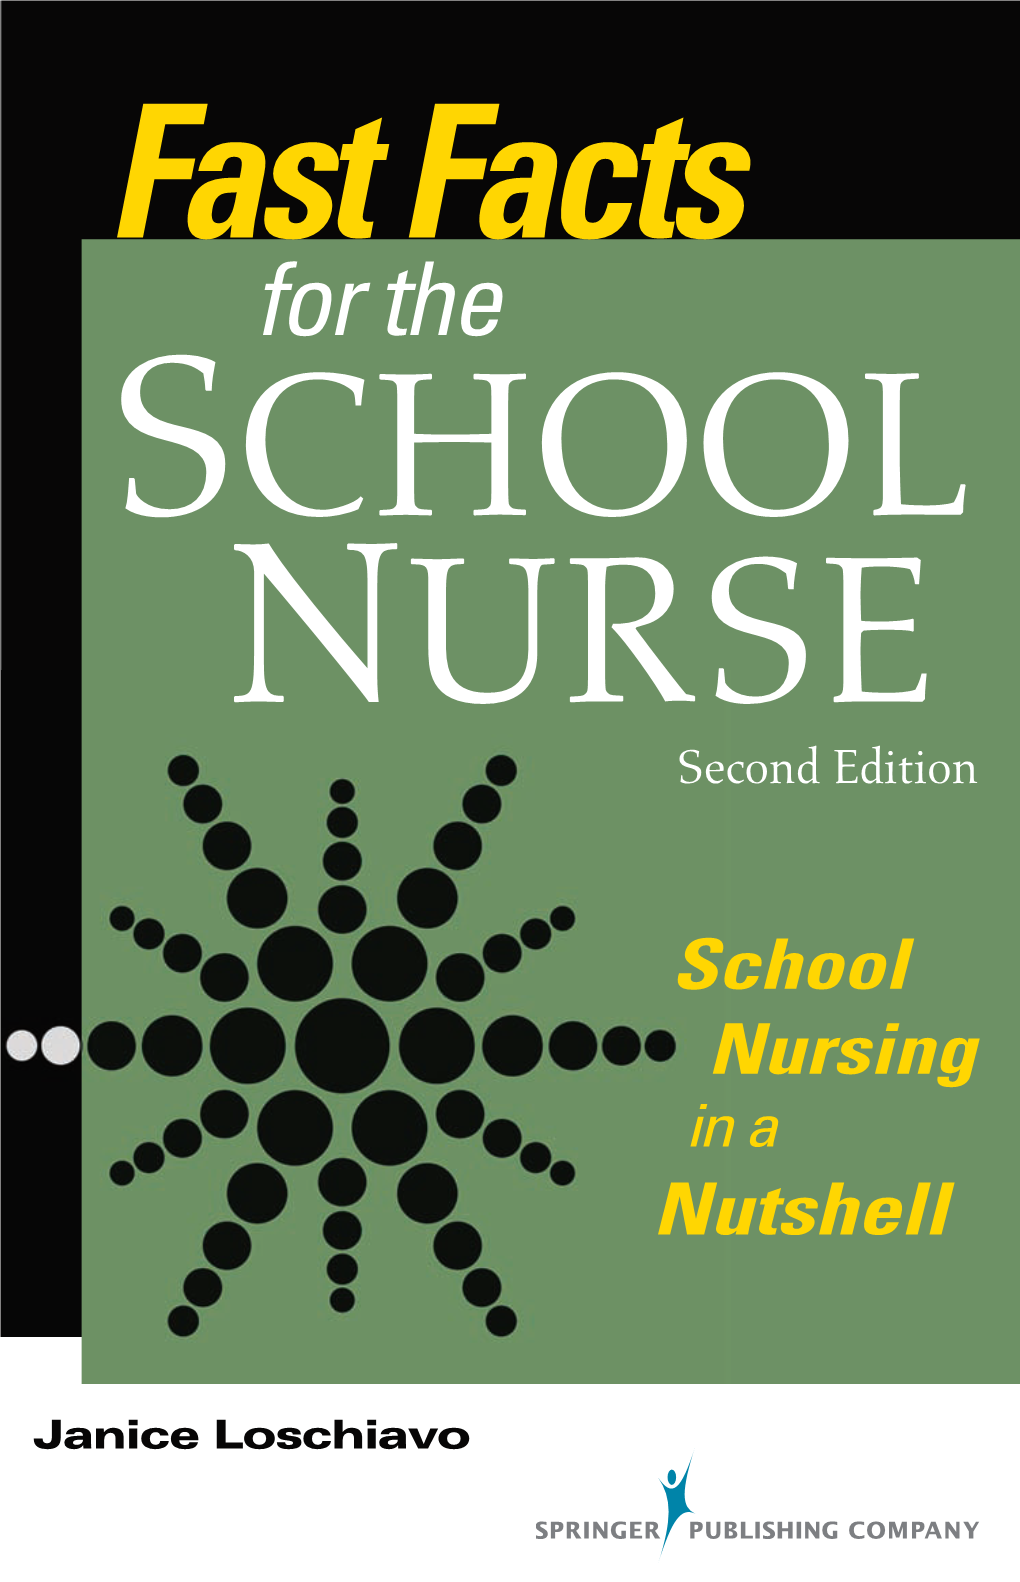 School Nursing in a Nutshell, Second Edition